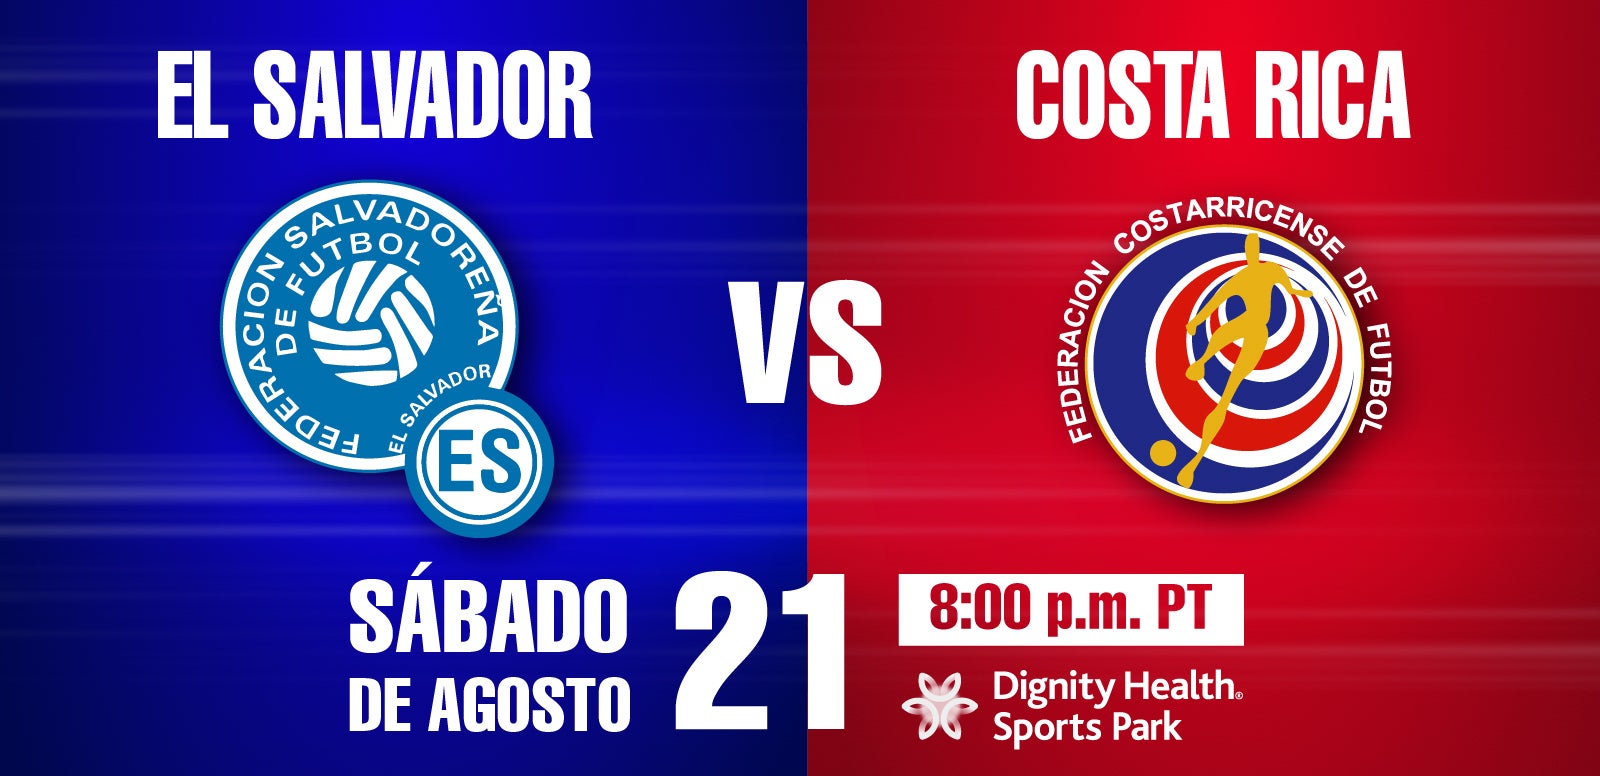 El Salvador vs Costa Rica Dignity Health Sports Park